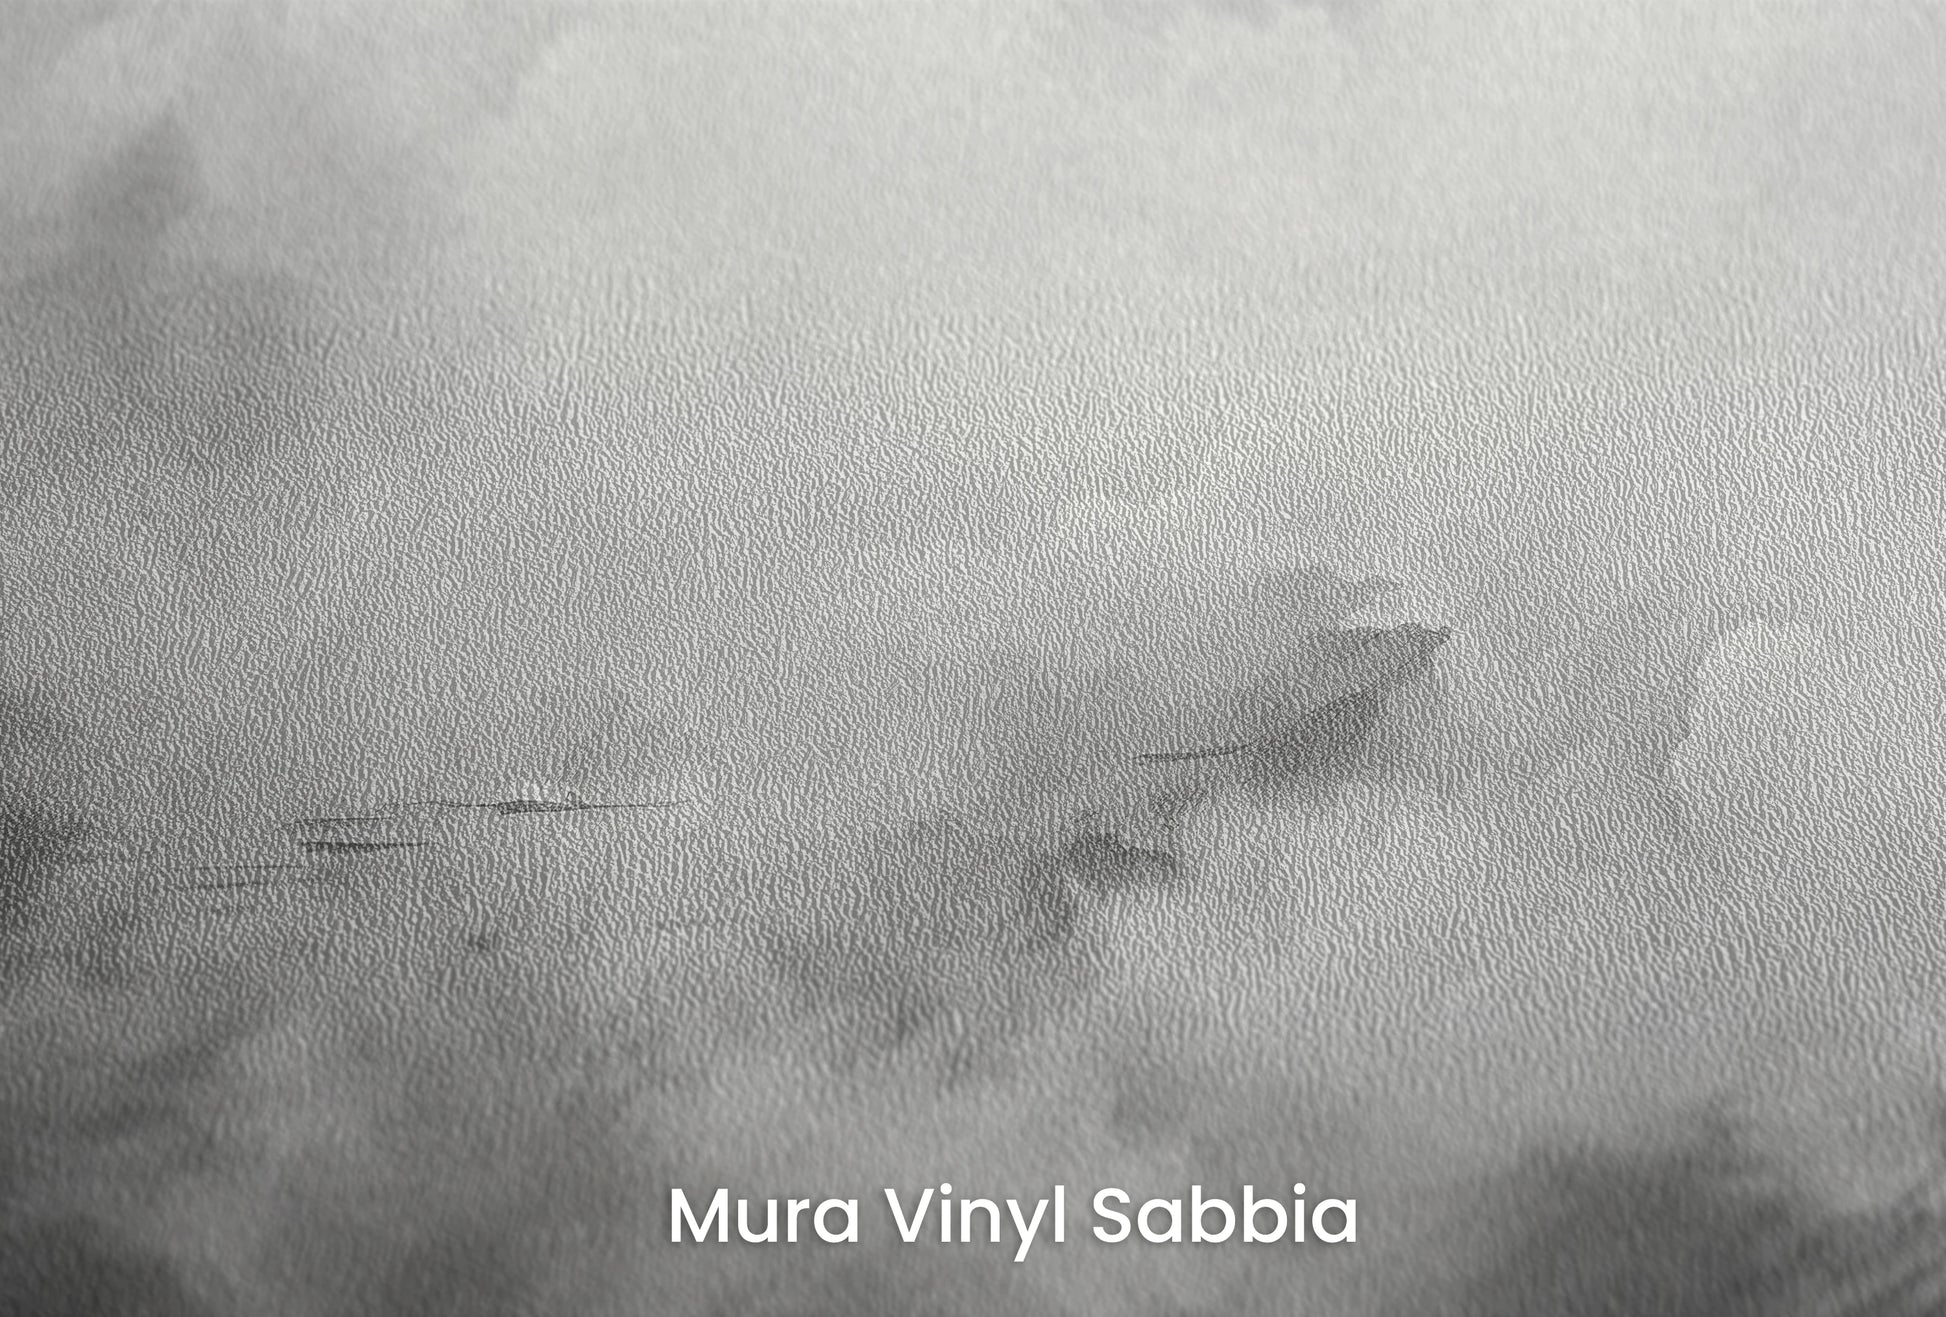 Zbliżenie na artystyczną fototapetę o nazwie Monochrome Whispers na podłożu Mura Vinyl Sabbia struktura grubego ziarna piasku.